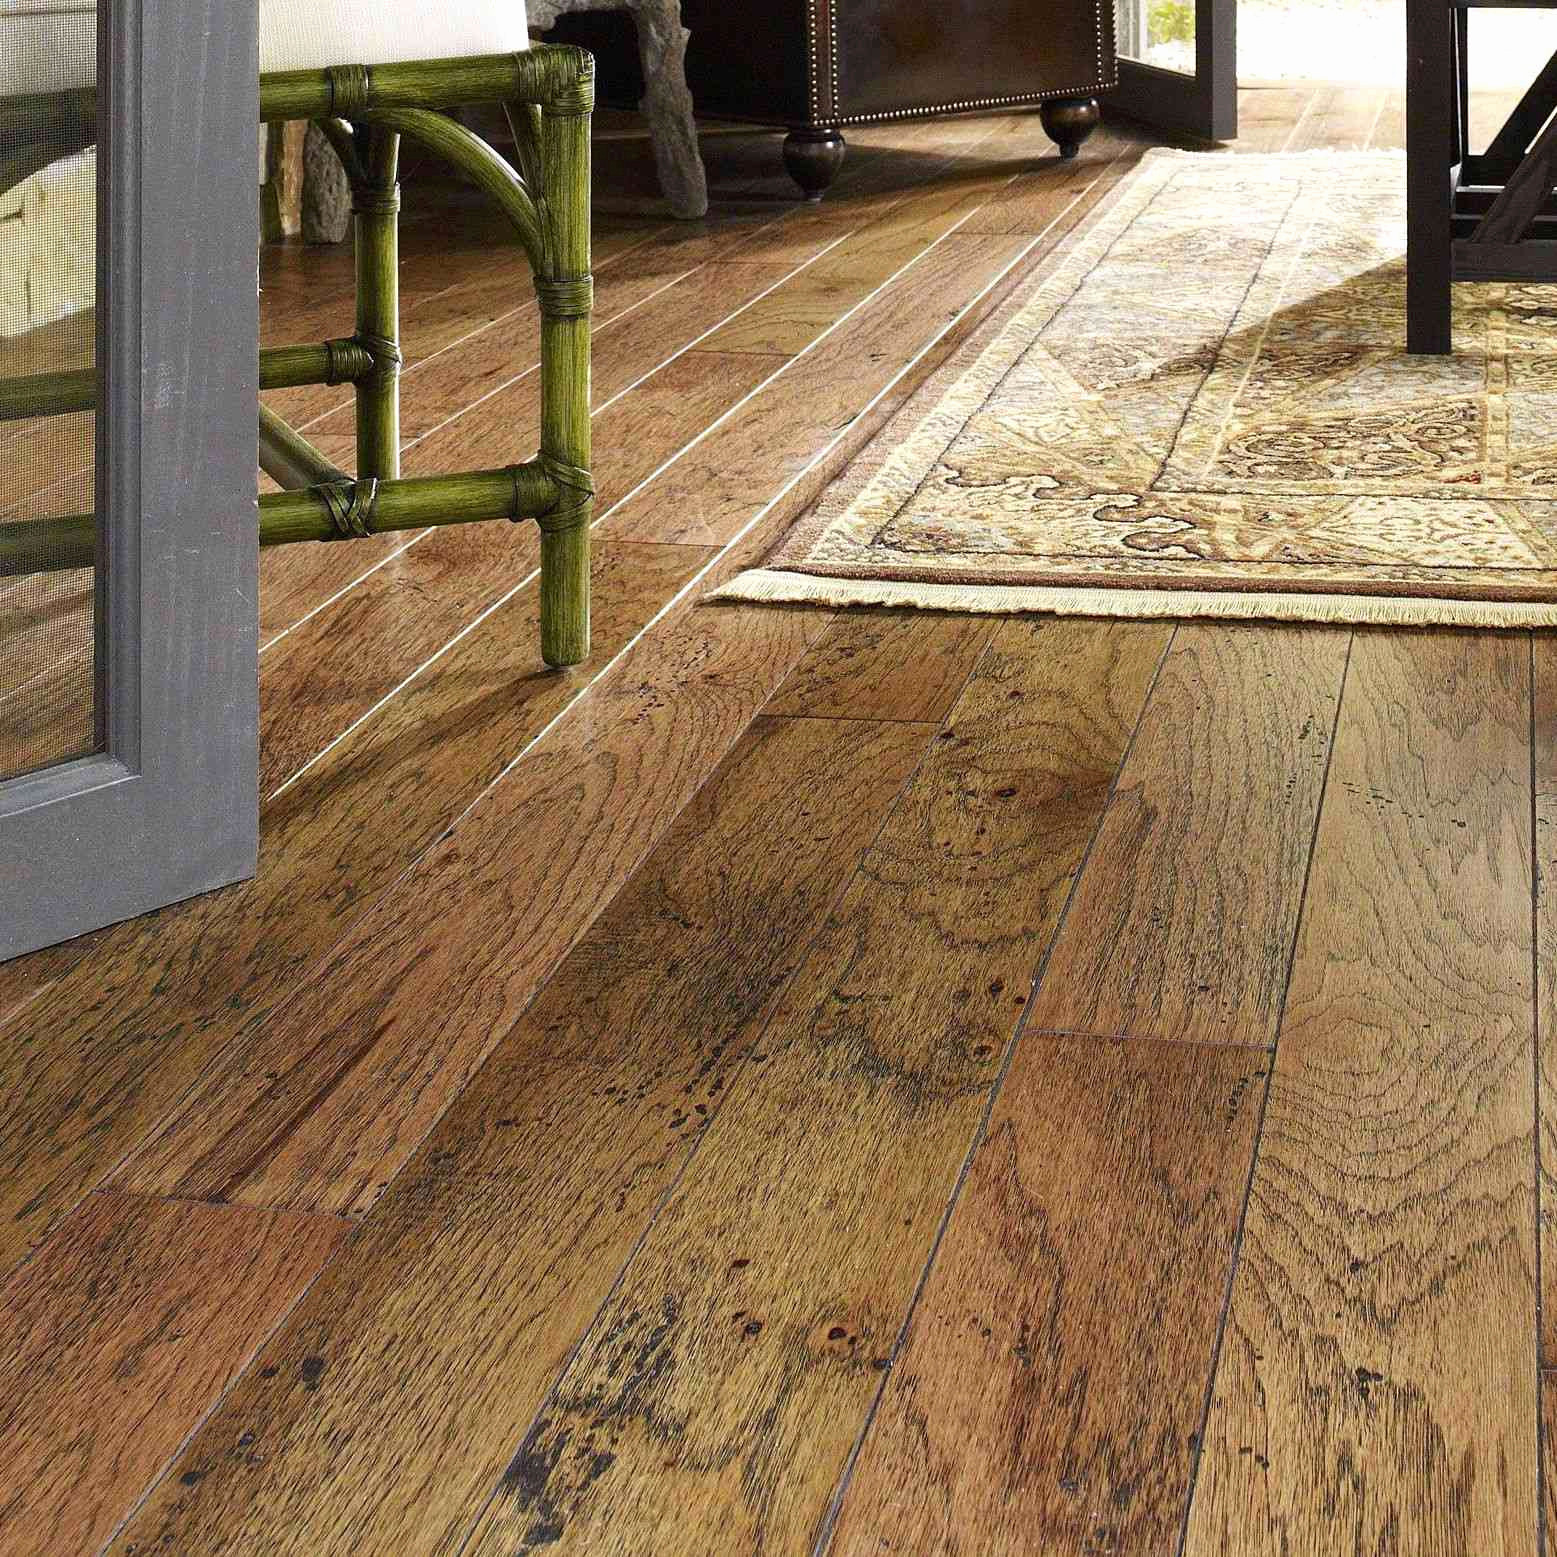 Canadian Hardwood Flooring Companies Of Hardwood Store Floor Plan Ideas Within Hardwood Floor Designs New Best Type Wood Flooring Best Floor Floor Wood Floor Wood 0d 